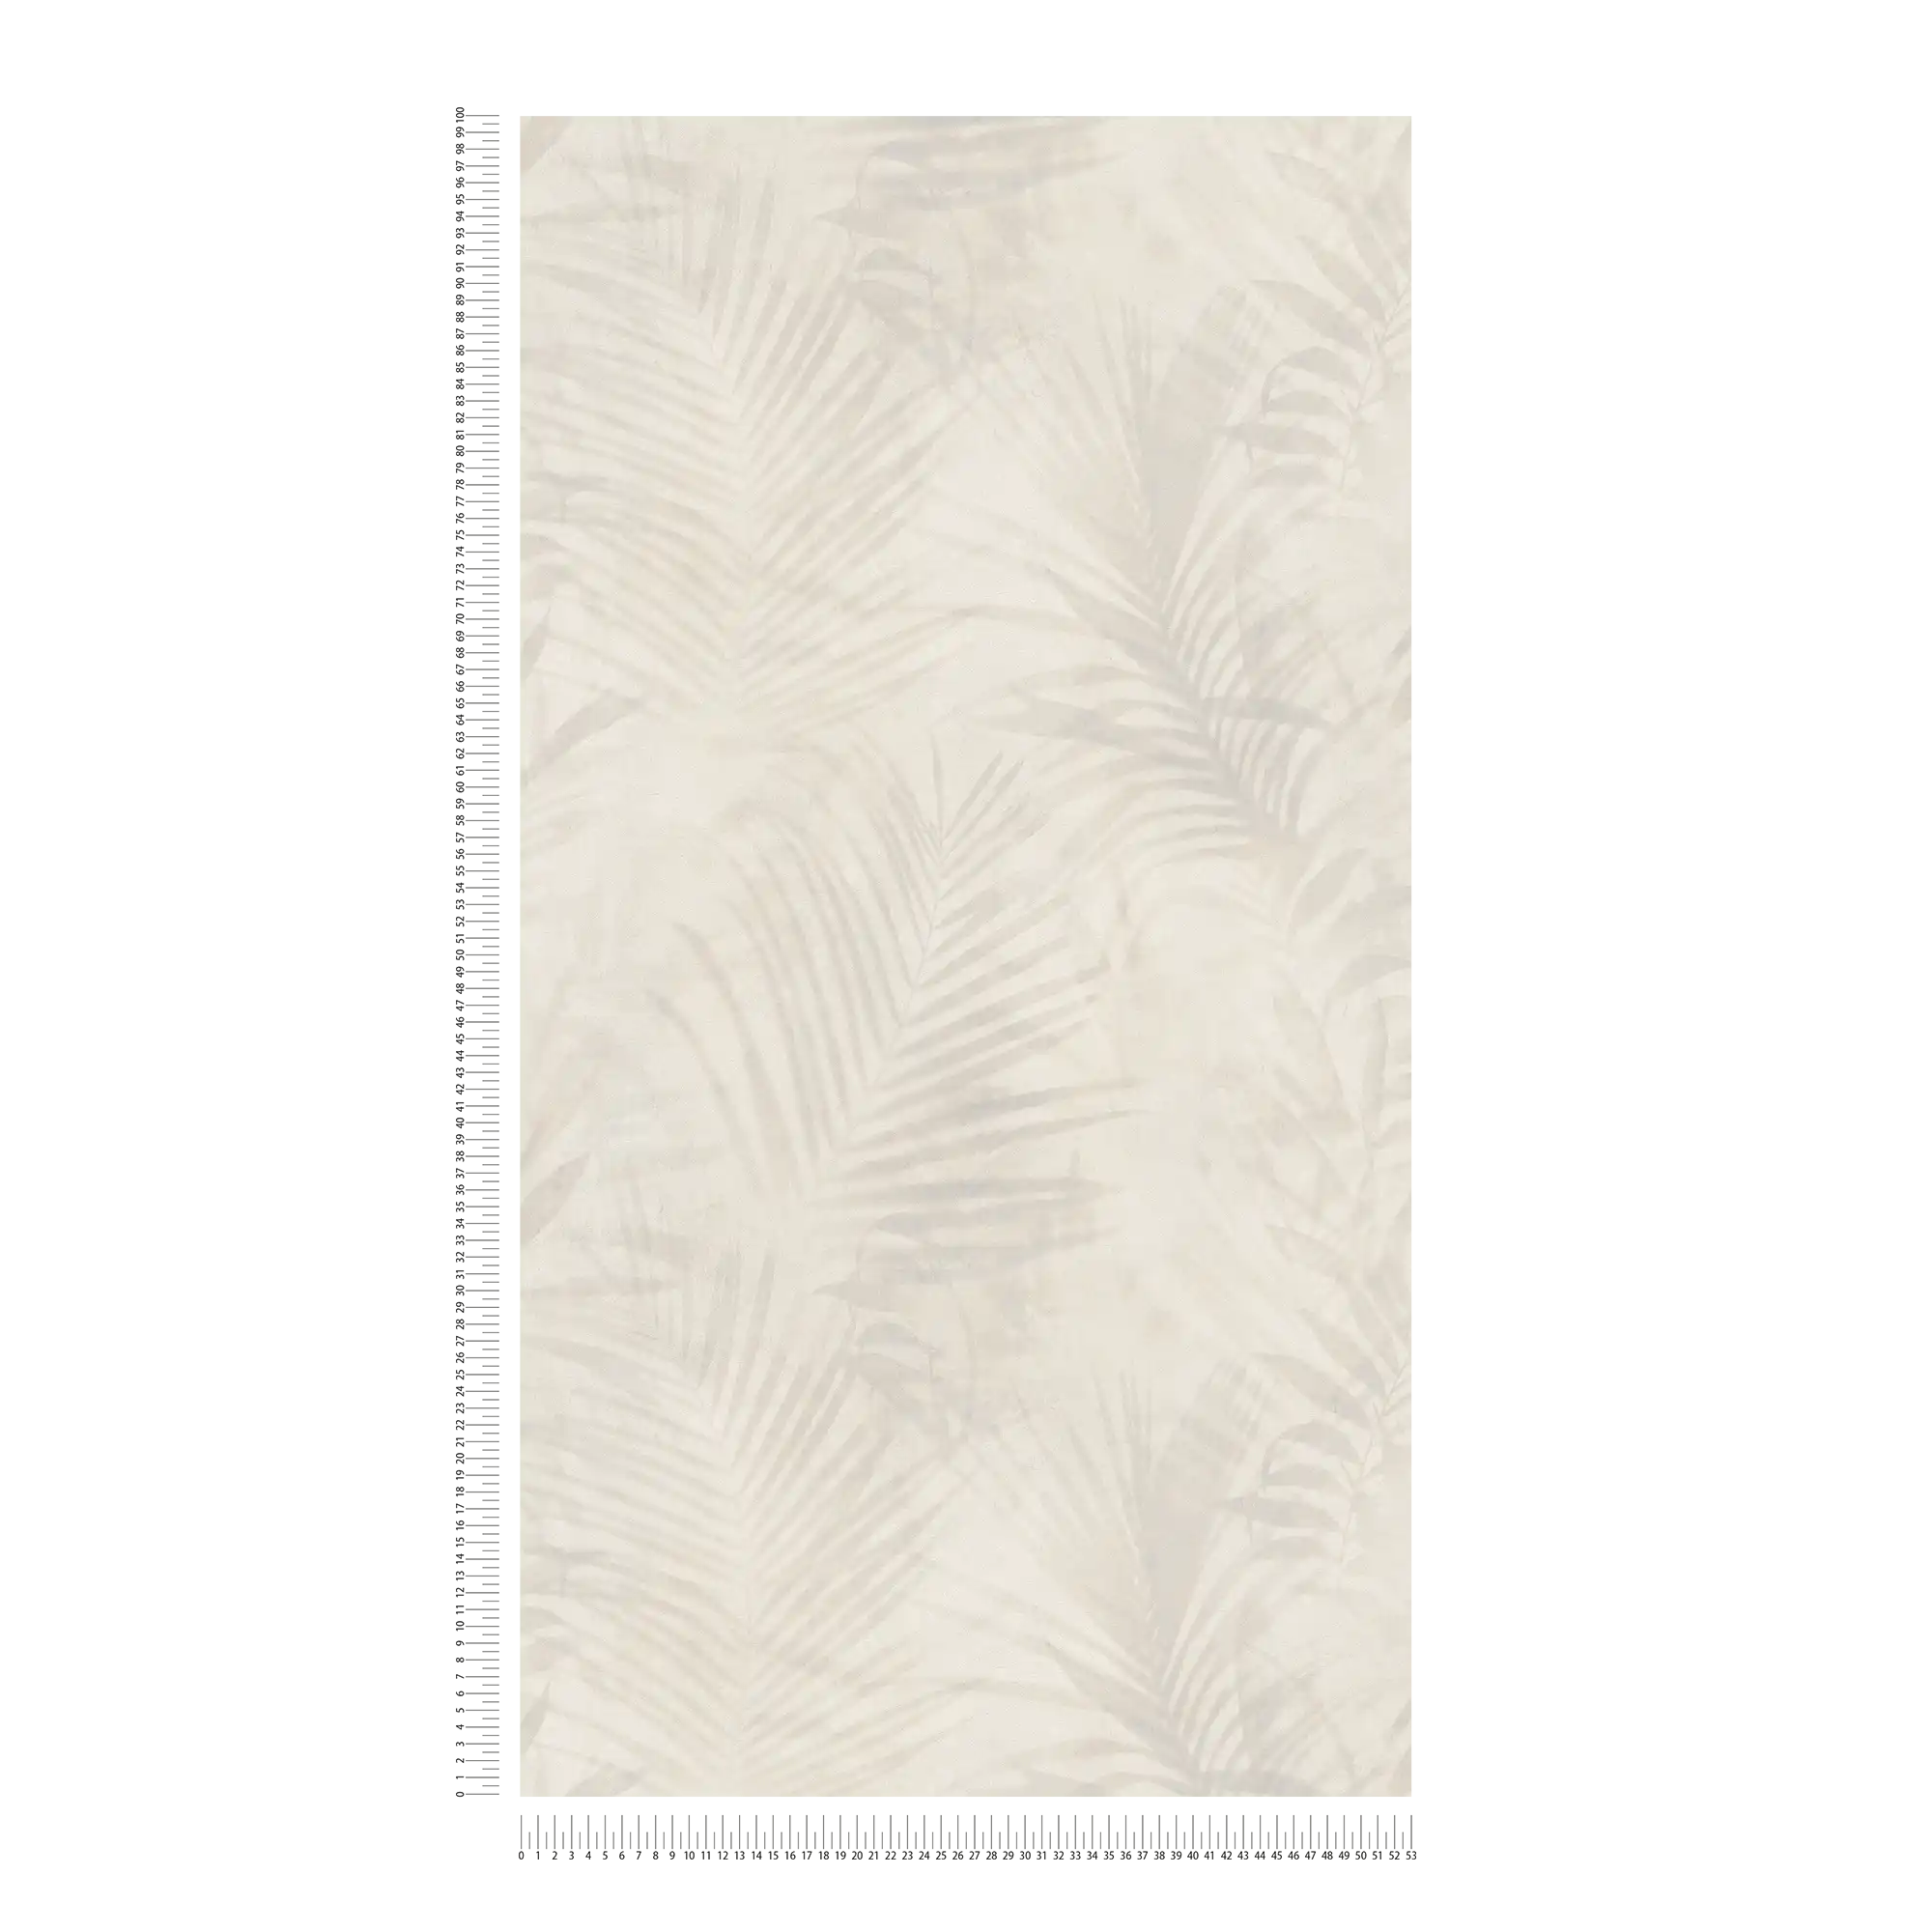             Wallpaper palm tree pattern in linen look - beige, cream, grey
        